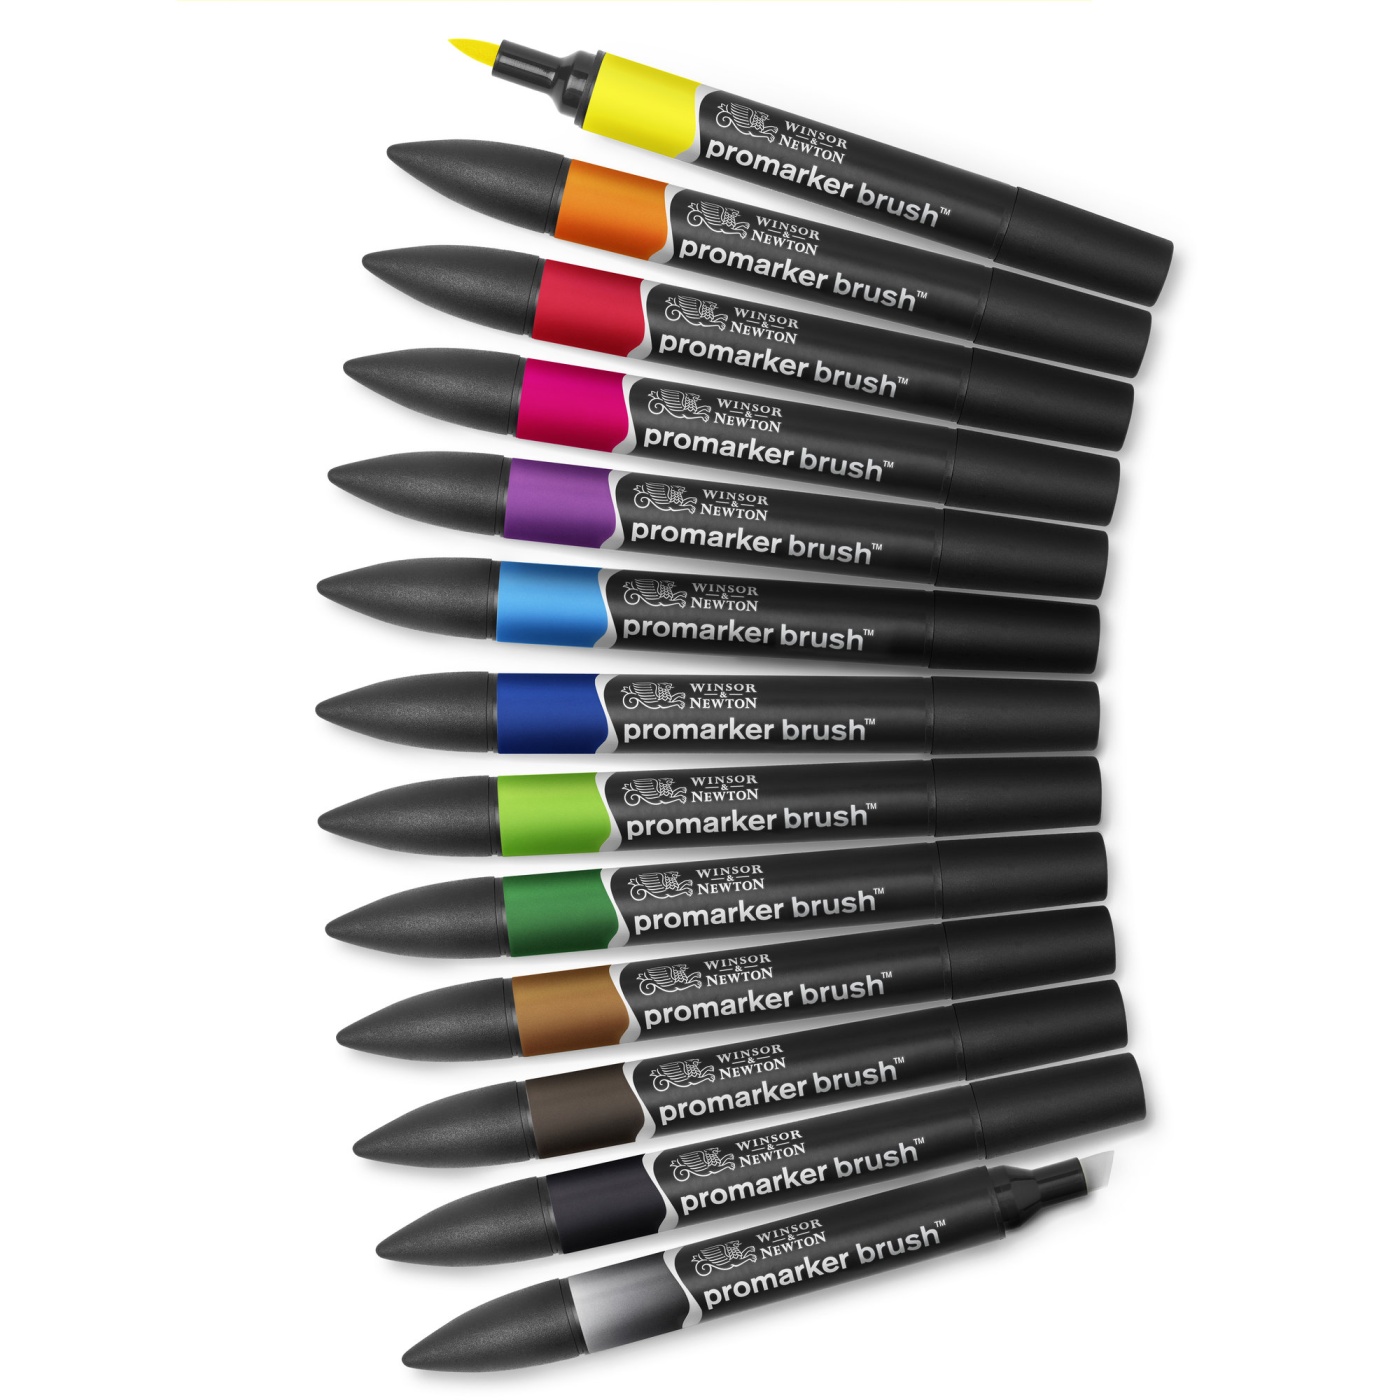 Promarker Brush Vibrant Tones 12-set + Blender i gruppen Pennor / Konstnärspennor / Penselpennor hos Pen Store (100557)